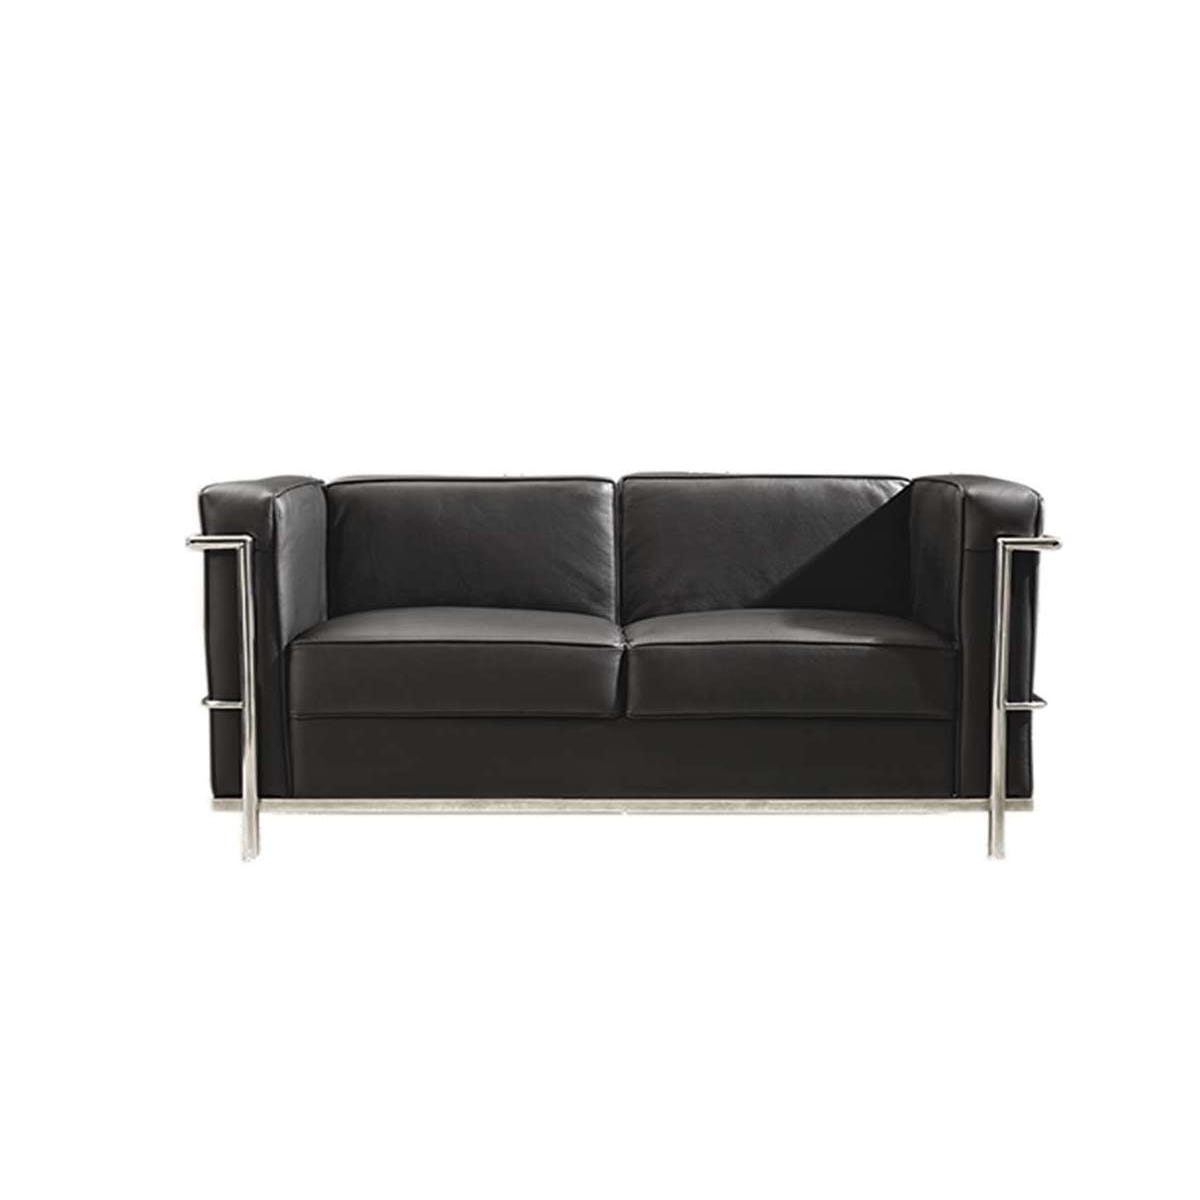 comprar sofa 2 plazas de diseño en piel negra - comprar sofas negros